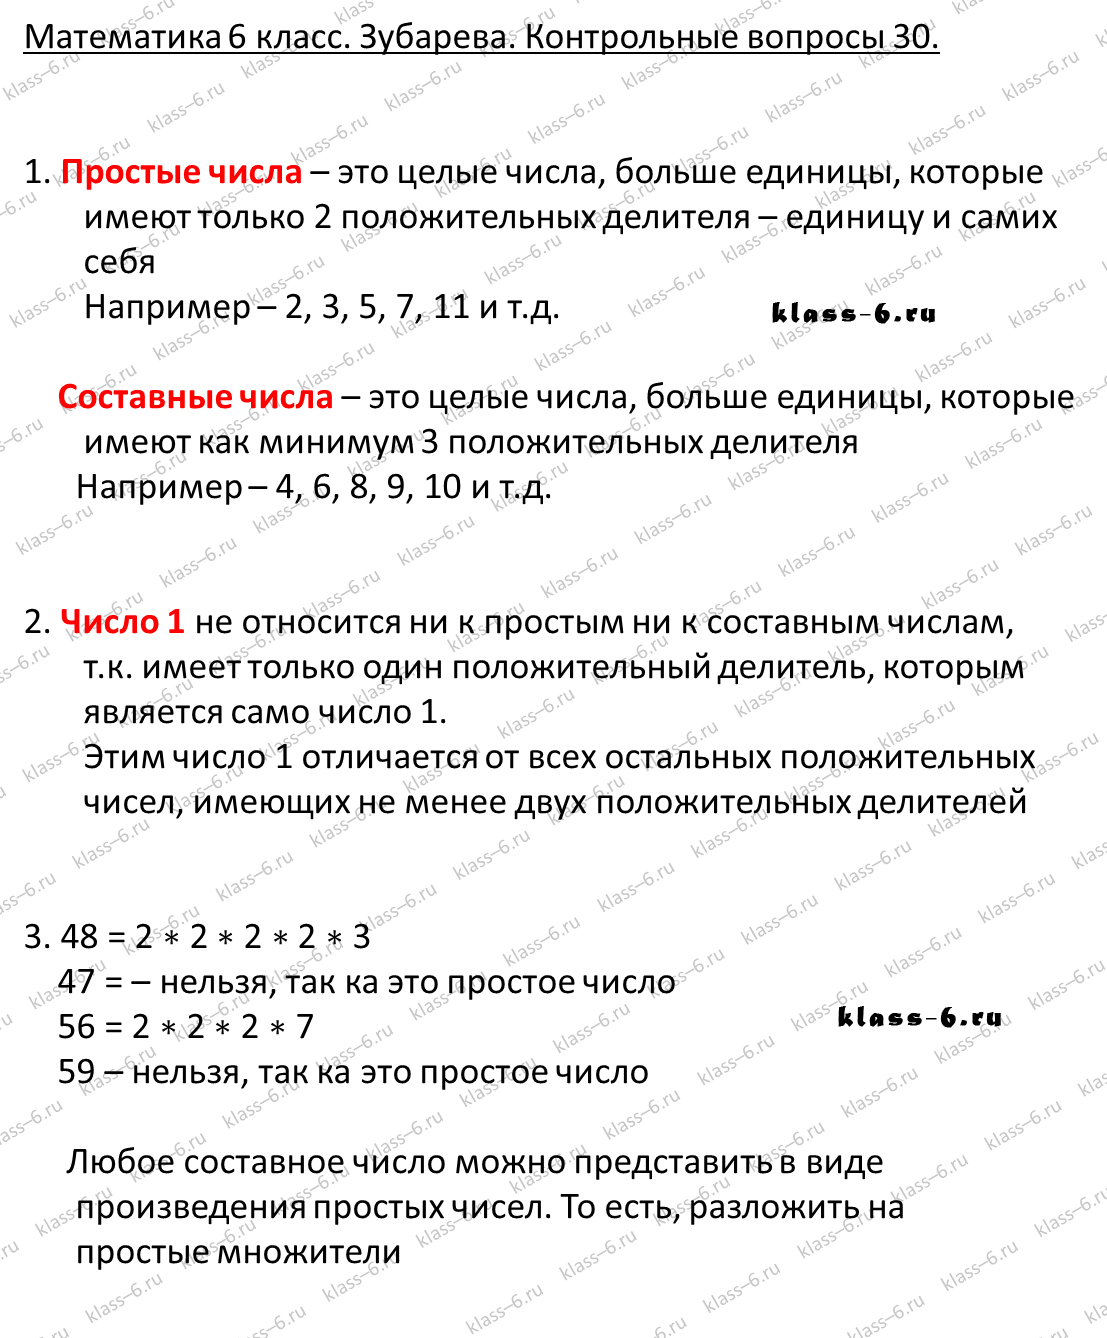 гдз математика Зубарева 6 класс ответ и подробное решение с объяснениями контрольных вопросов к параграфу № 30